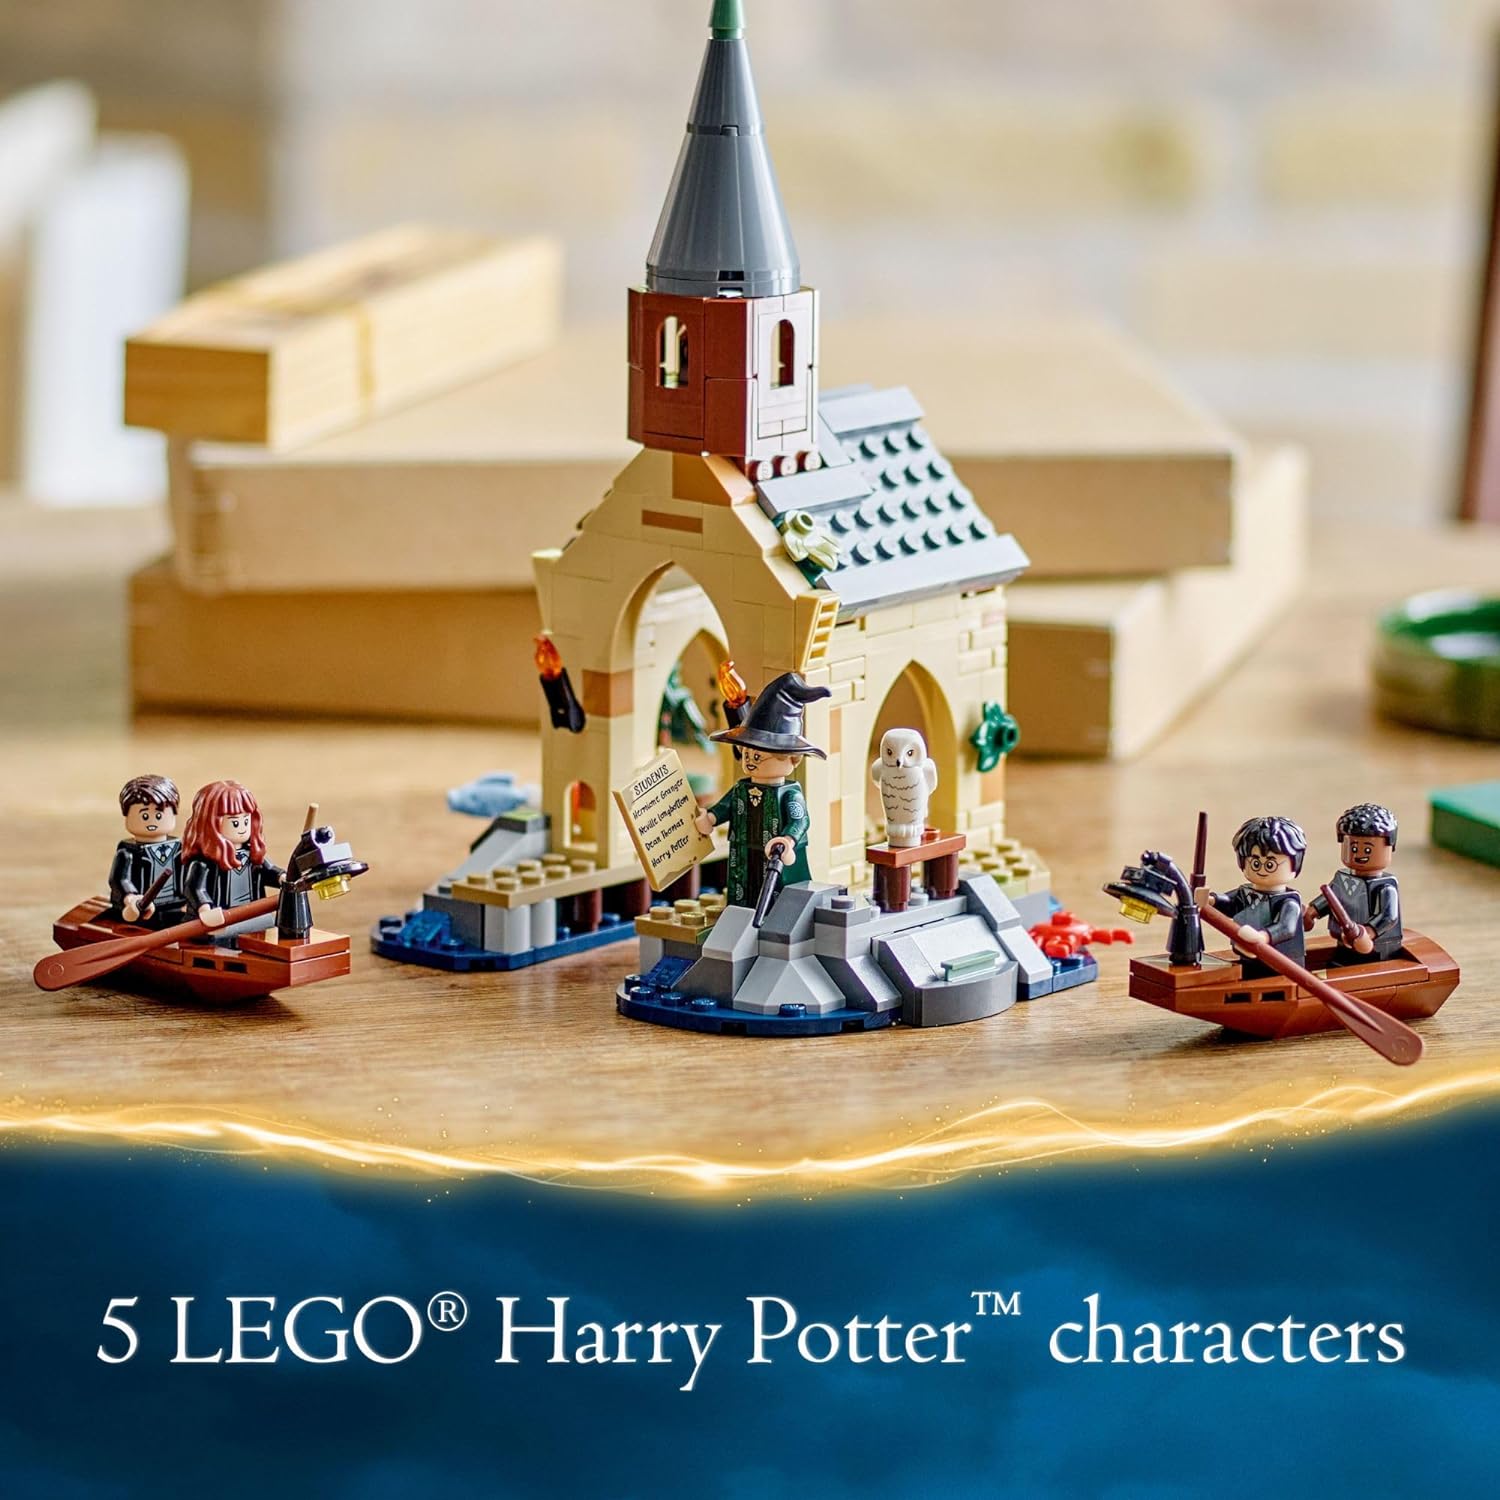 ليجو 76426 هاري بوتر هوجورتس كاسل بوت هاوس، لعبة هاري بوتر الخيالية للأولاد والبنات مع قاربين قابلين للبناء و5 شخصيات صغيرة، لعبة القلعة.